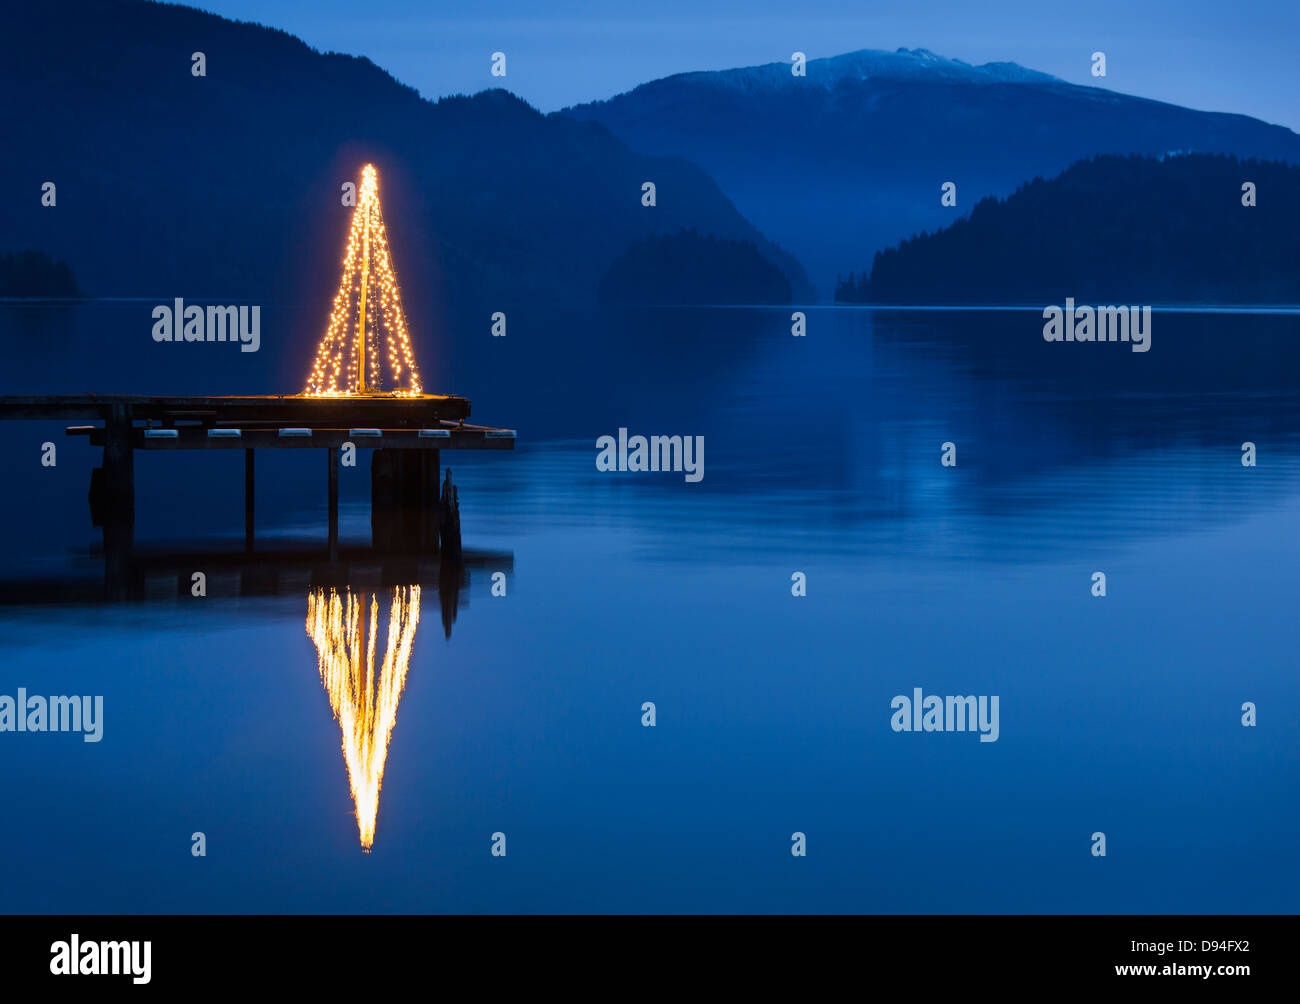 Illuminated Christmas tree on wooden pier Stock Photo